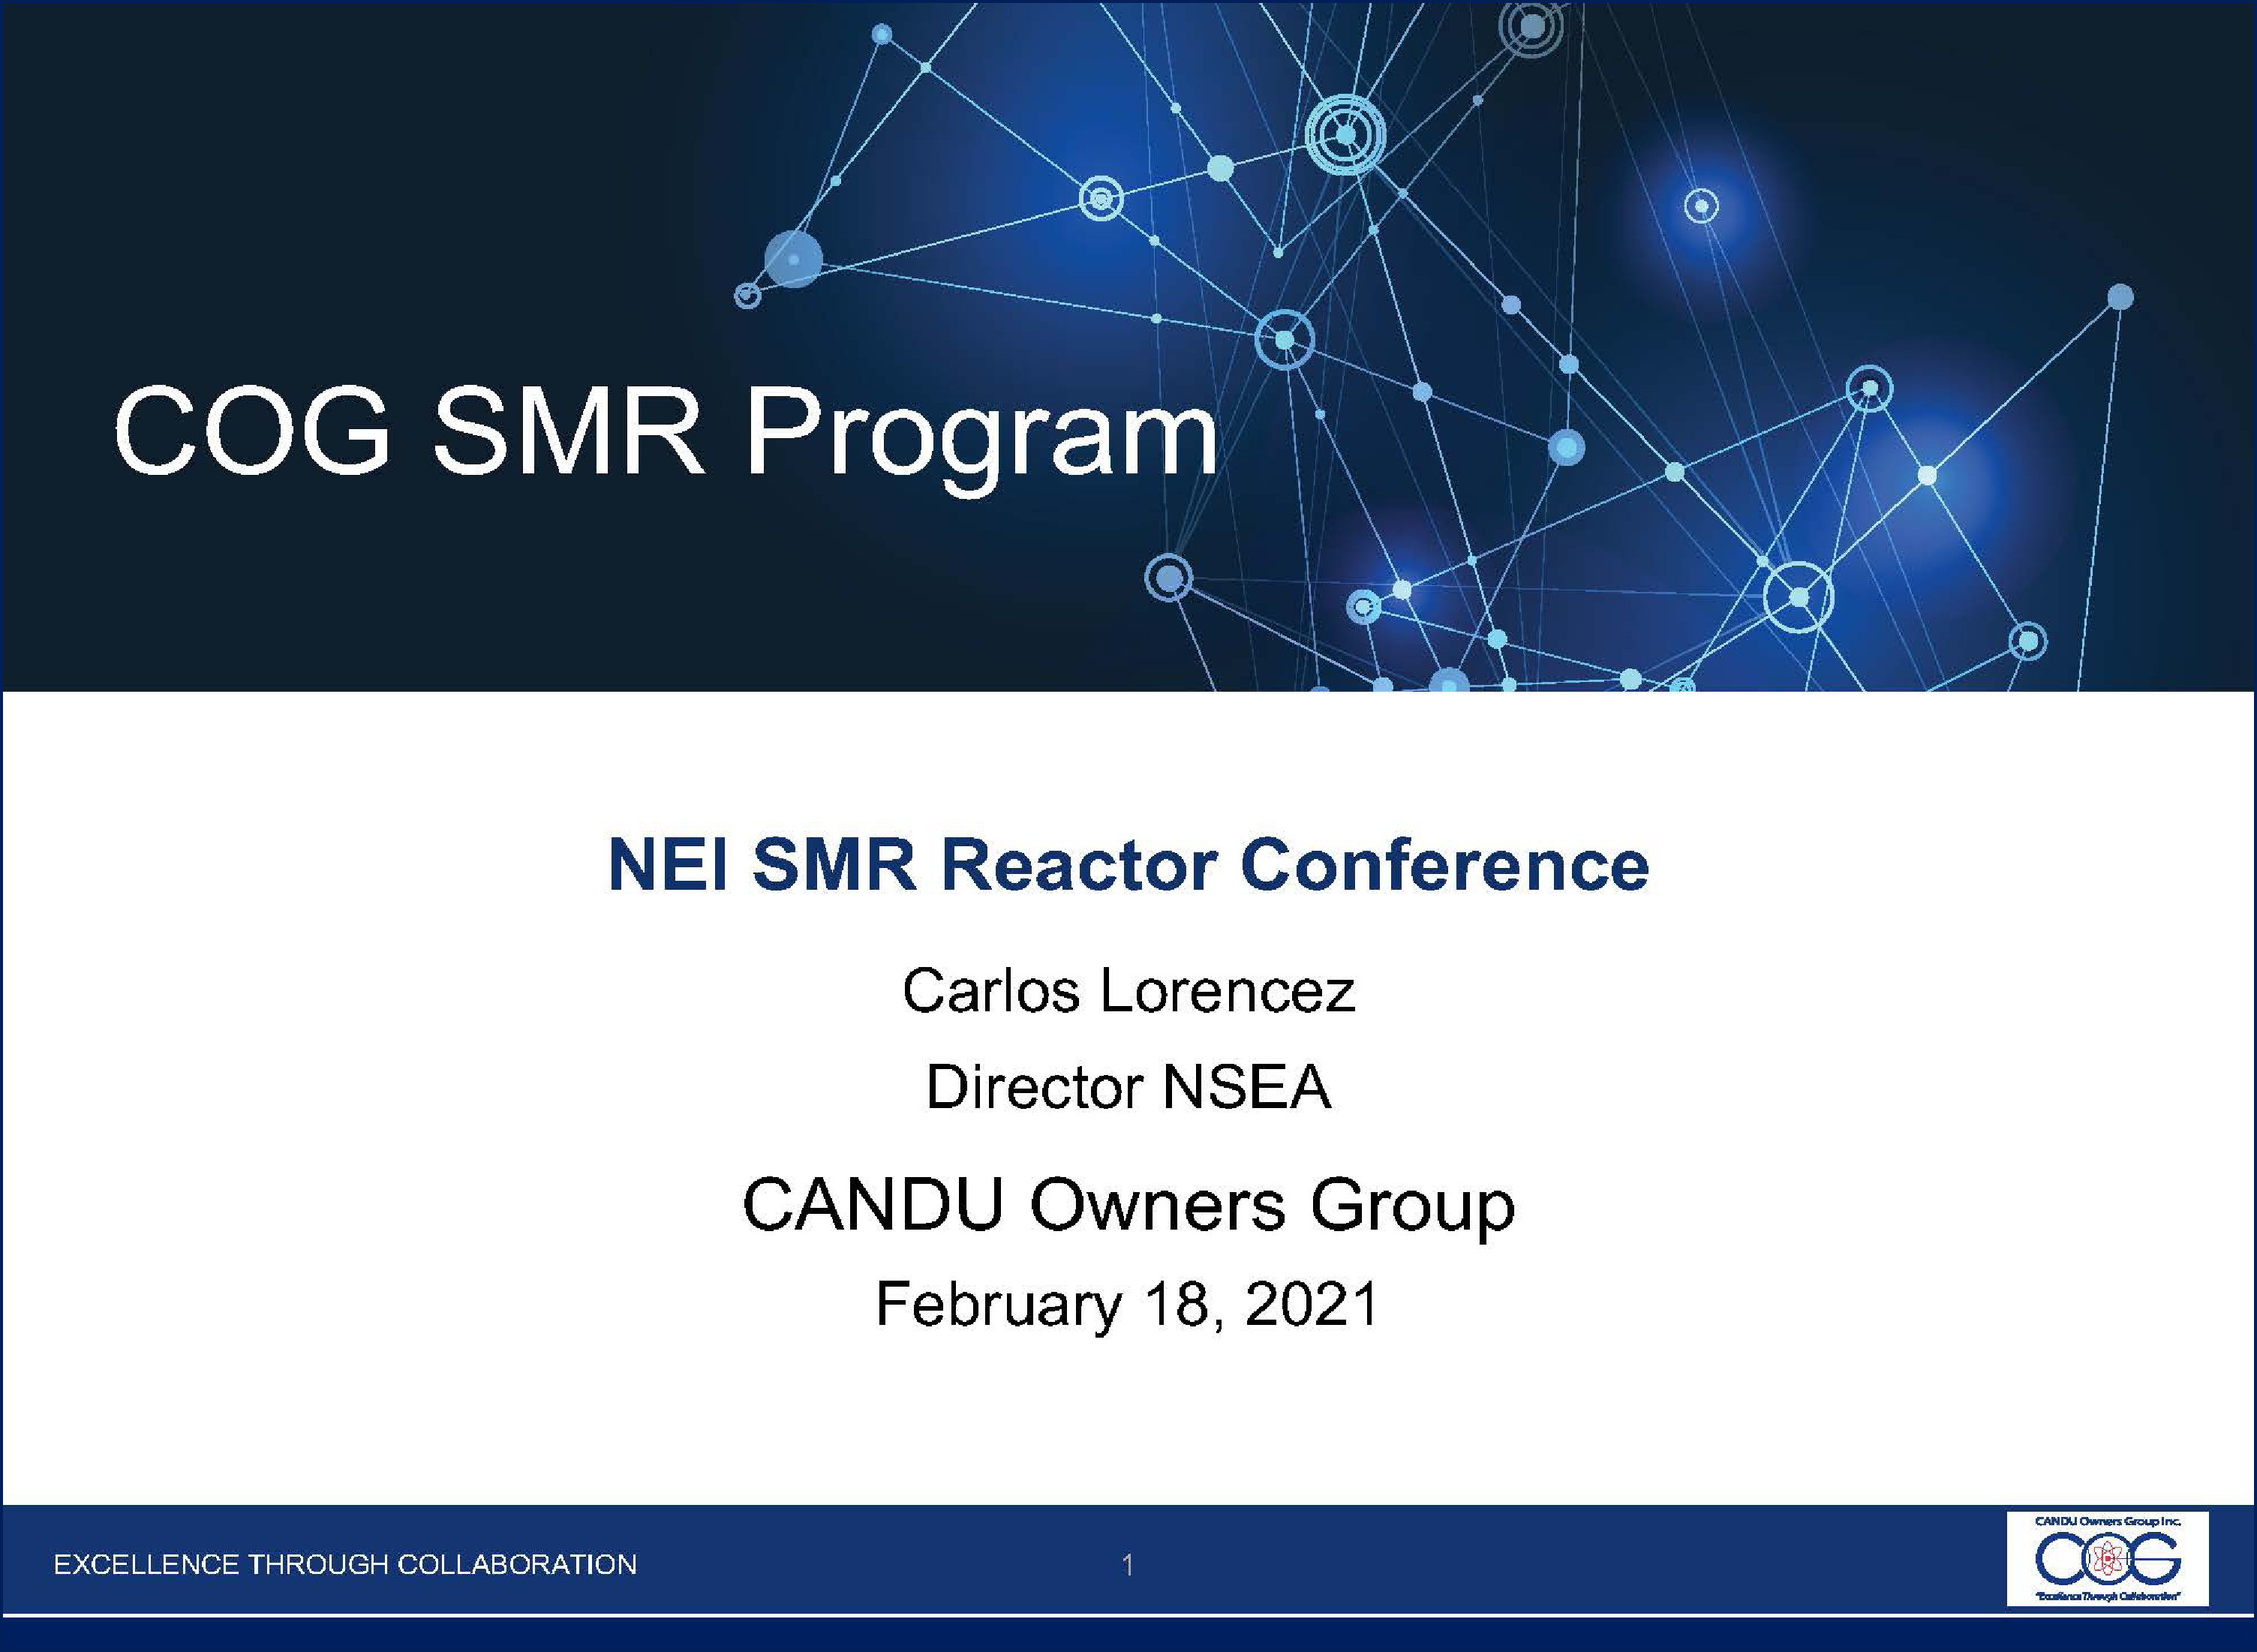 COG SMR panel (NEI SMR Conference).jpg